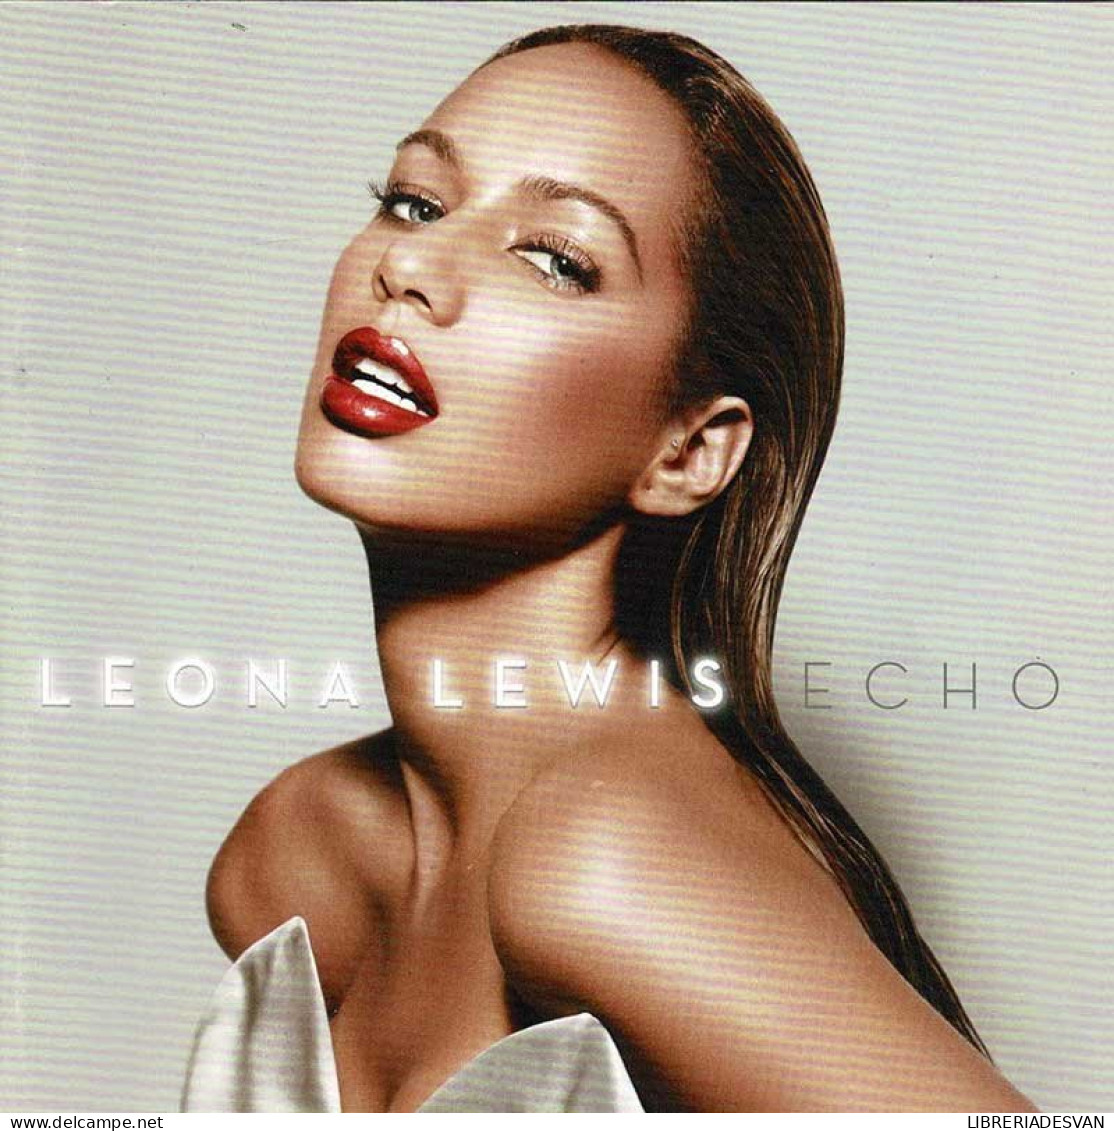 Leona Lewis - Echo. CD - Disco & Pop